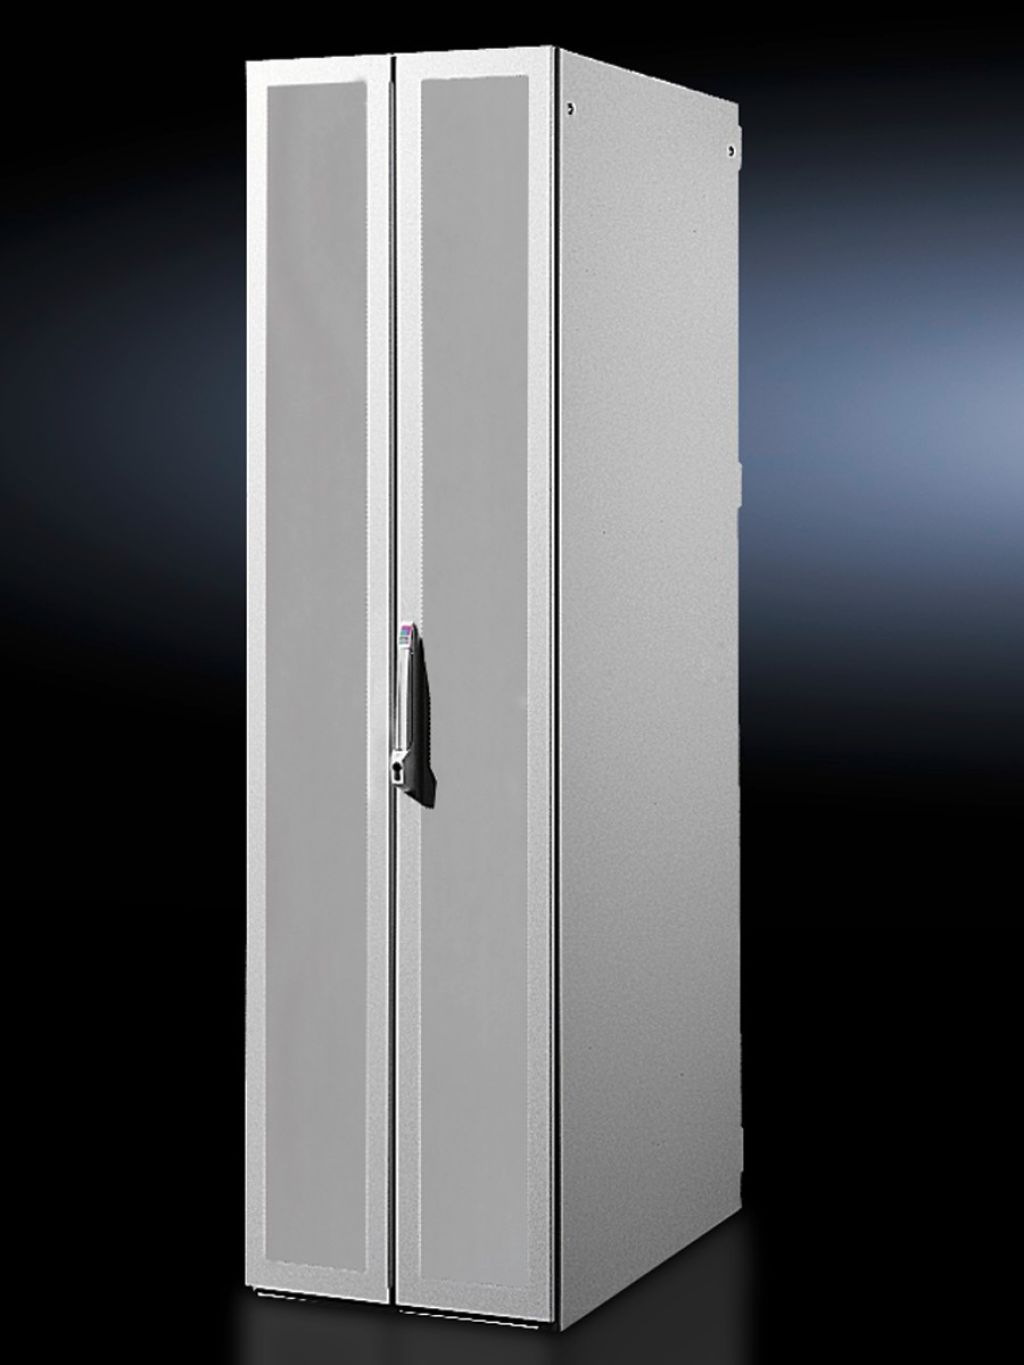 Стальная дверь, двустворчатая, с вентиляцией для DK-TS